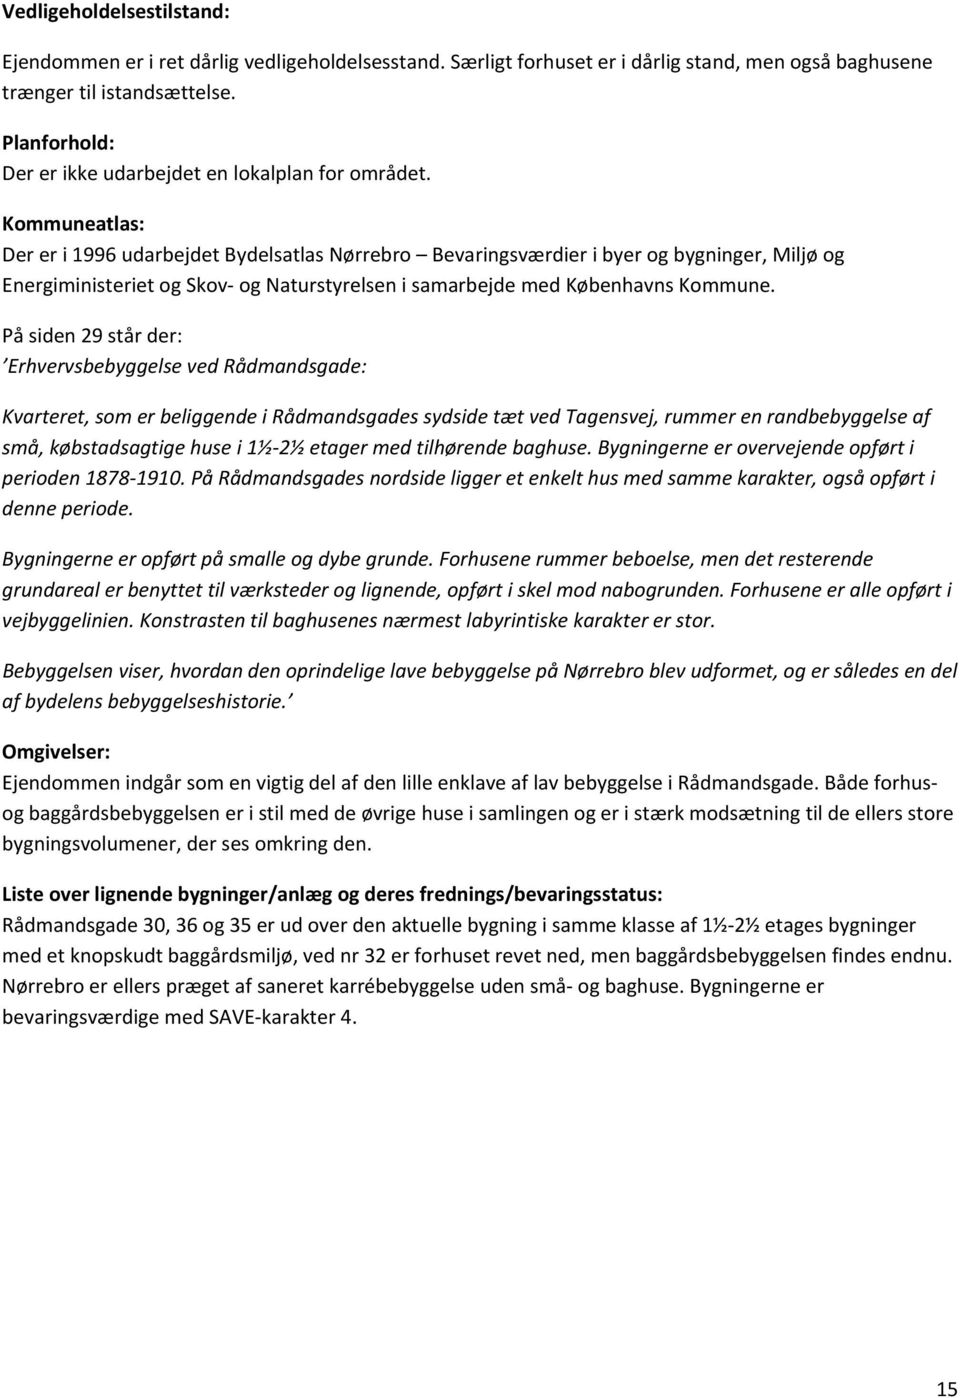 Kommuneatlas: Der er i 1996 udarbejdet Bydelsatlas Nørrebro Bevaringsværdier i byer og bygninger, Miljø og Energiministeriet og Skov og Naturstyrelsen i samarbejde med Københavns Kommune.